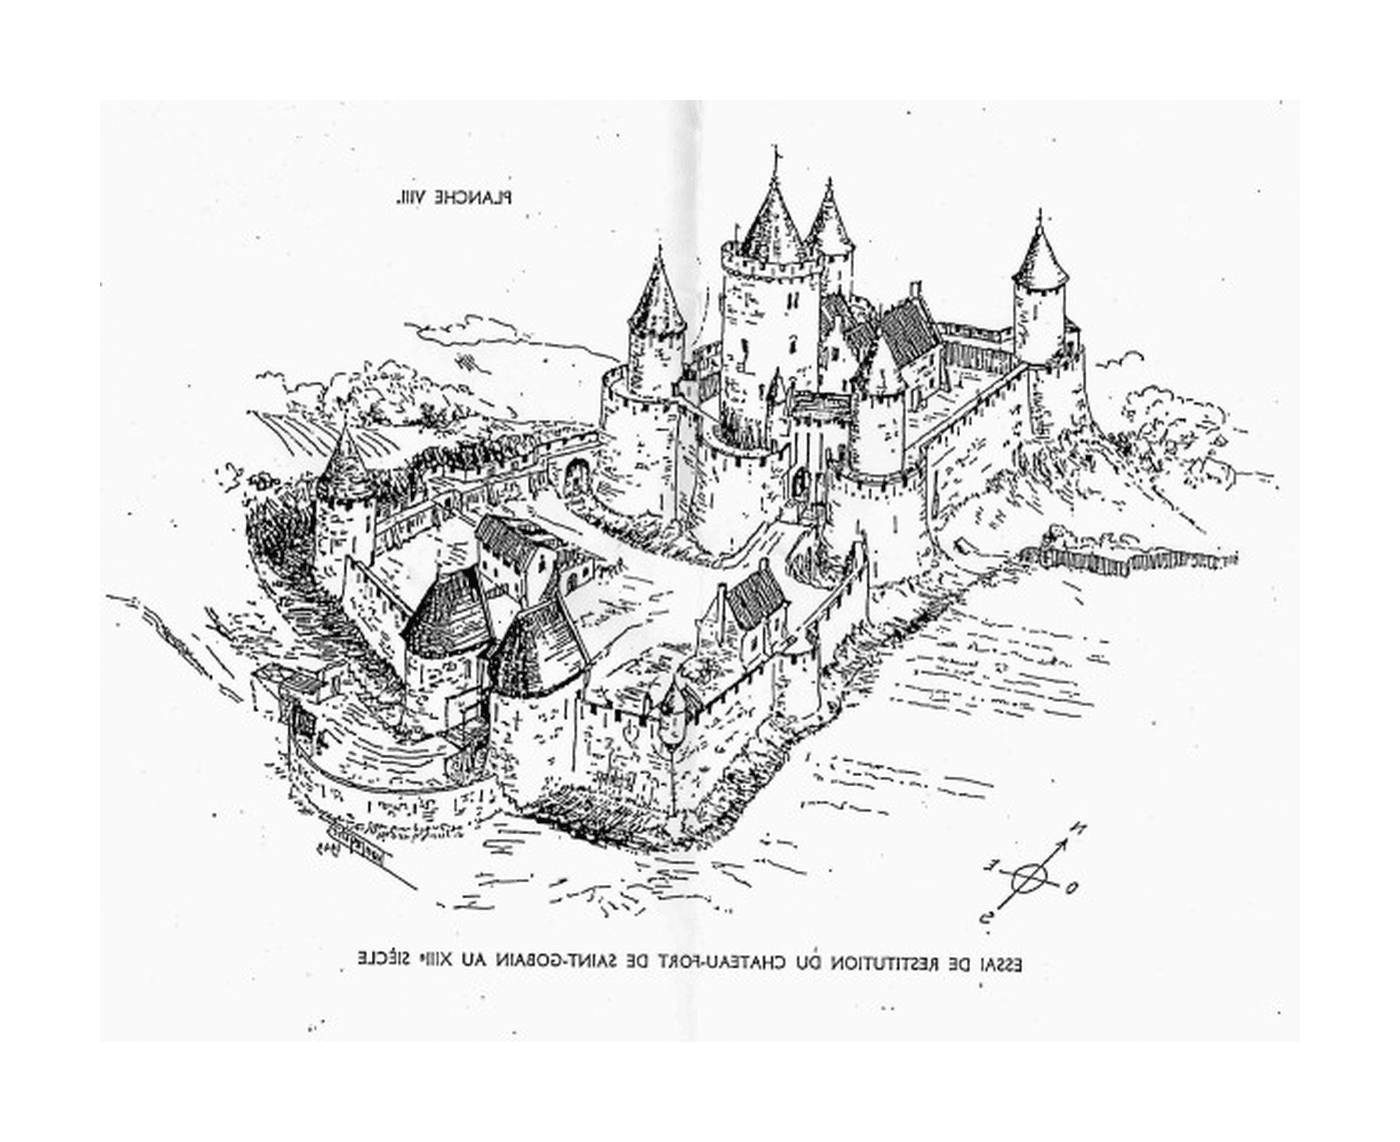   Un château fort du Moyen Âge, situé au XIVe siècle à Saint-Gobain 